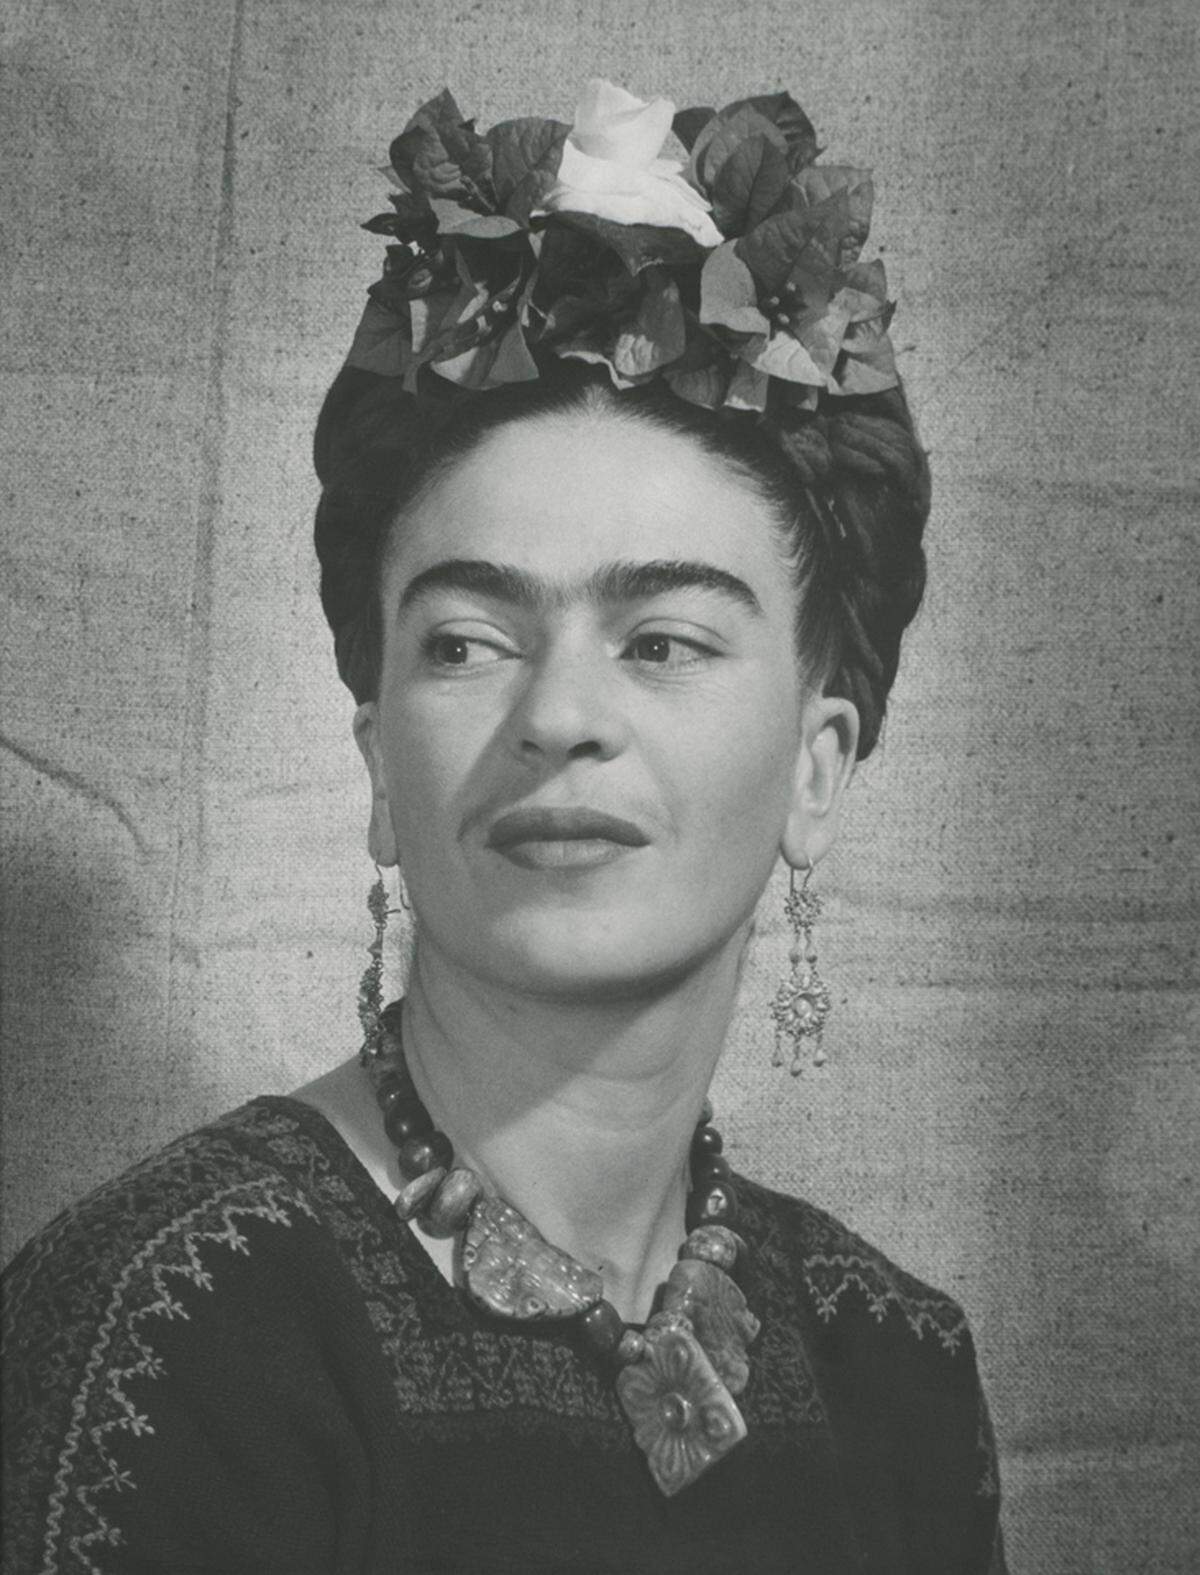 Frida Kahlo, eine der bekanntesten Künstlerinnen des 20. Jahrhunderts. Ihre Selbstporträts sind legendär. Bernhard Silberstein fotografierte sie 1940.